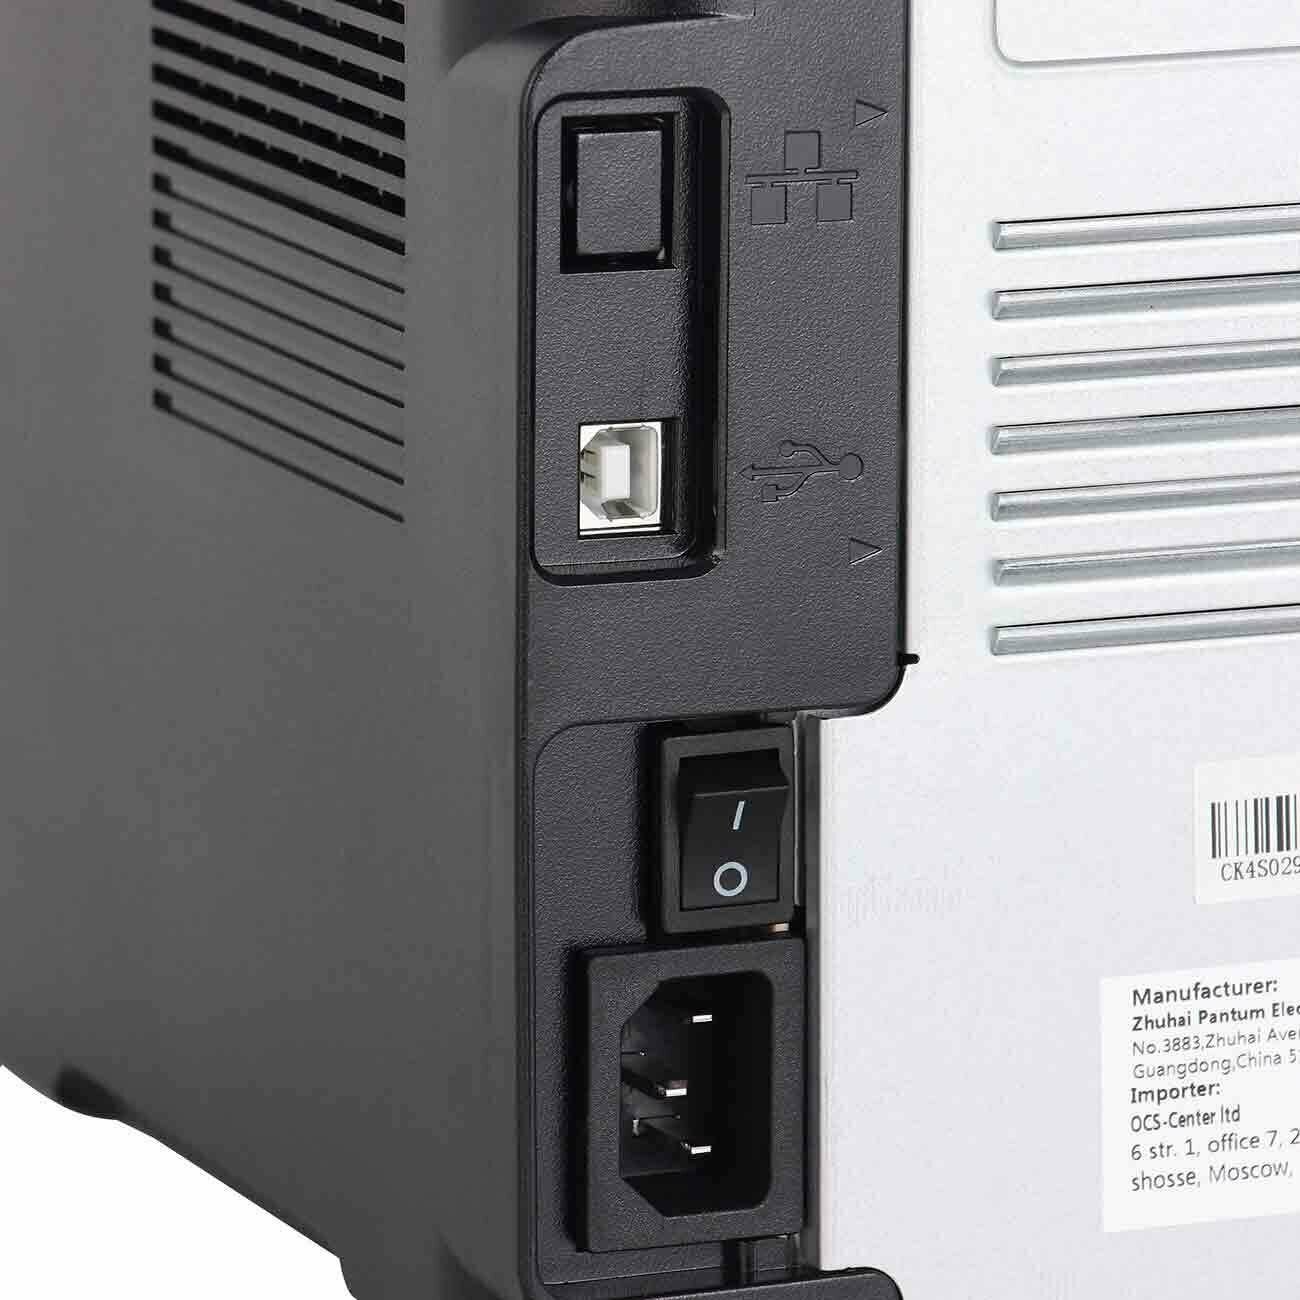 Принтер лазерный Pantum P2516 ч/б A4 черный